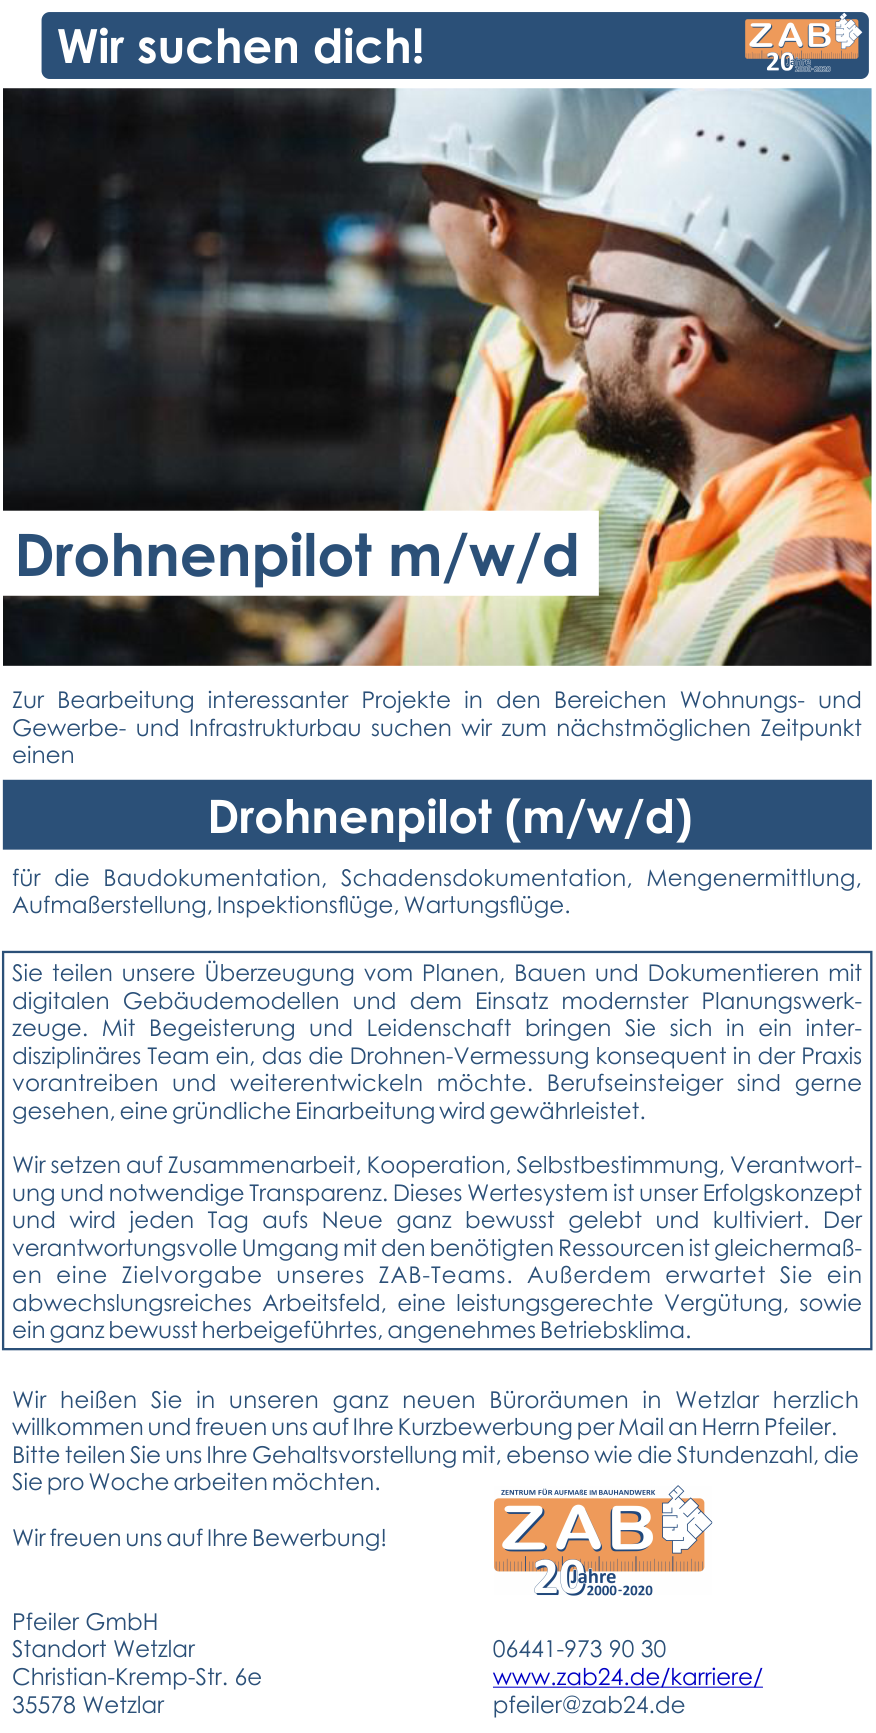 Drohnenpilot Karriere Job Stellen bei ZAB Pfeiler Projekt GmbH